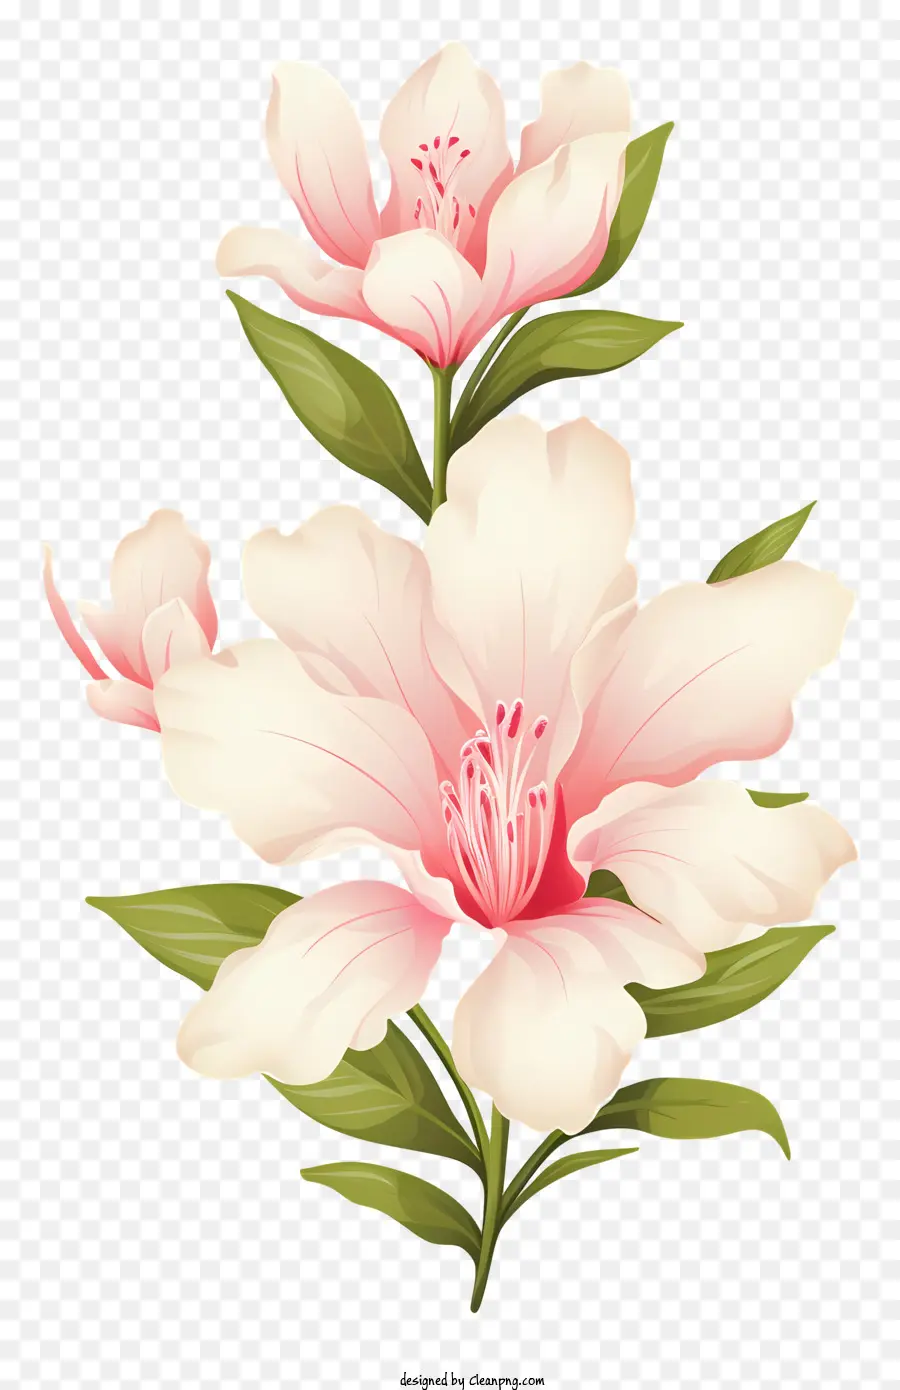 Rosa Blumen Bouquet Weiße Zentren grüne Blätter lebensechte Blumen - Nahaufsicht des realistischen rosa Blumenstraußes